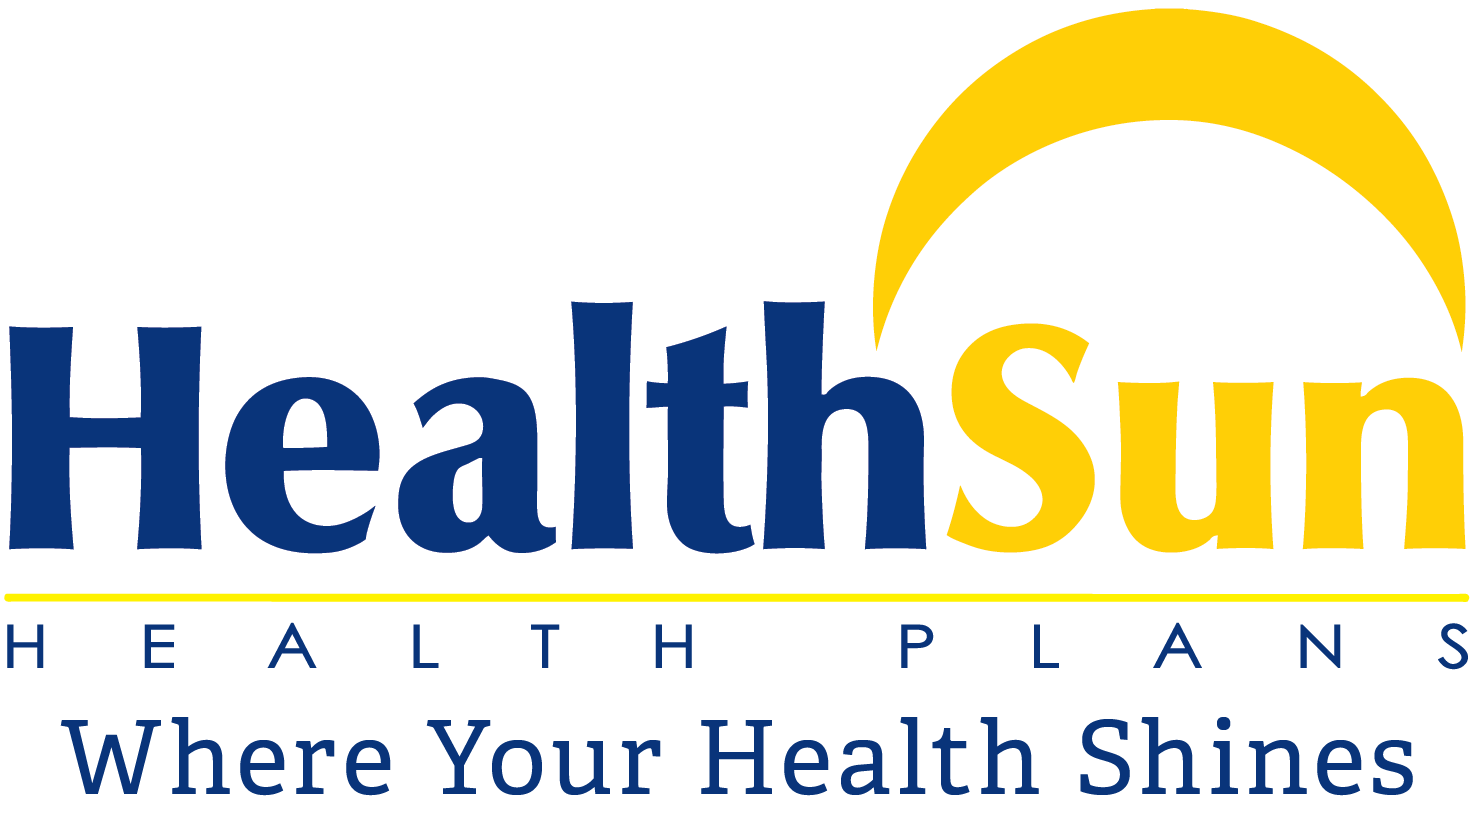 Medicare.gov Logo - Member Resources - Healthsun Health Plans